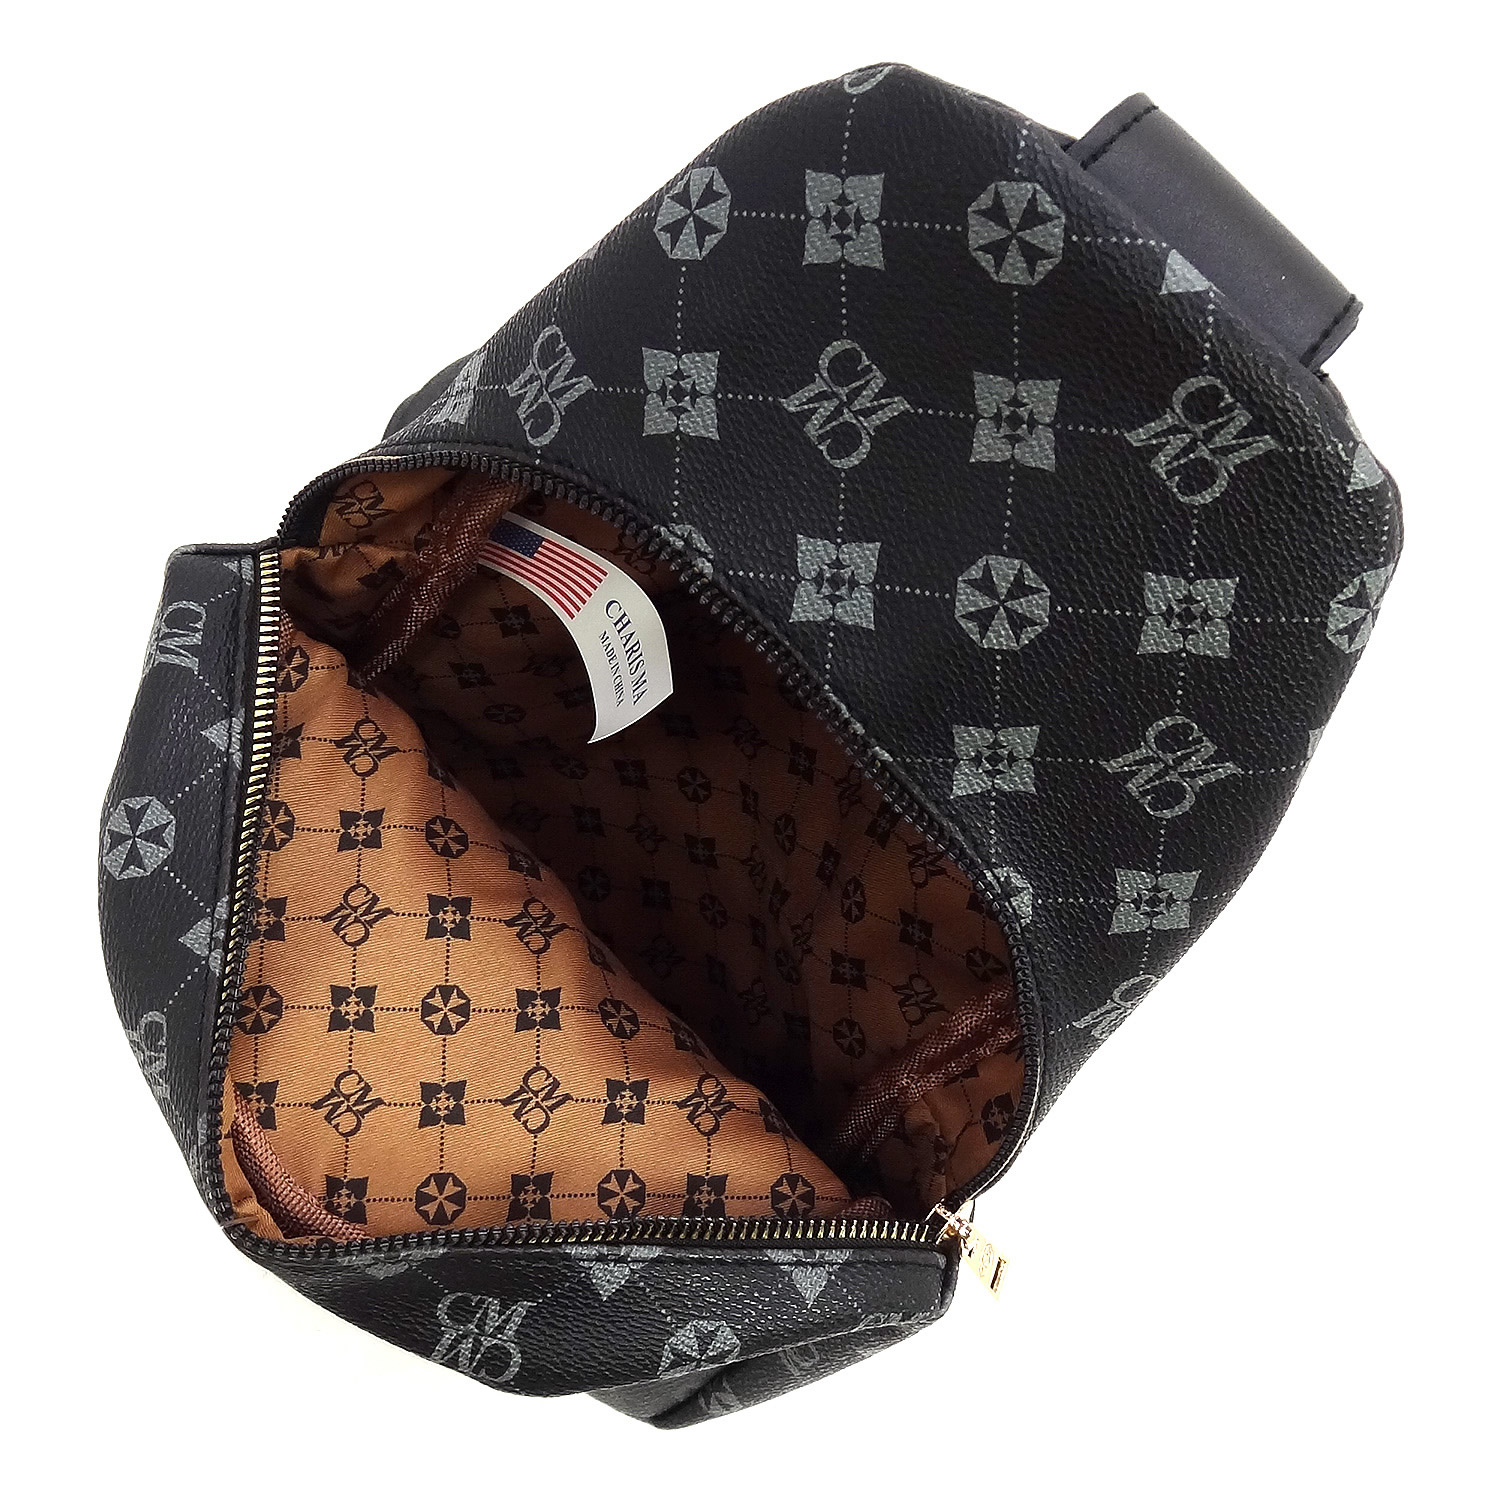 Monogram Sling Backpack - New Arrivals - Onsale Handbag